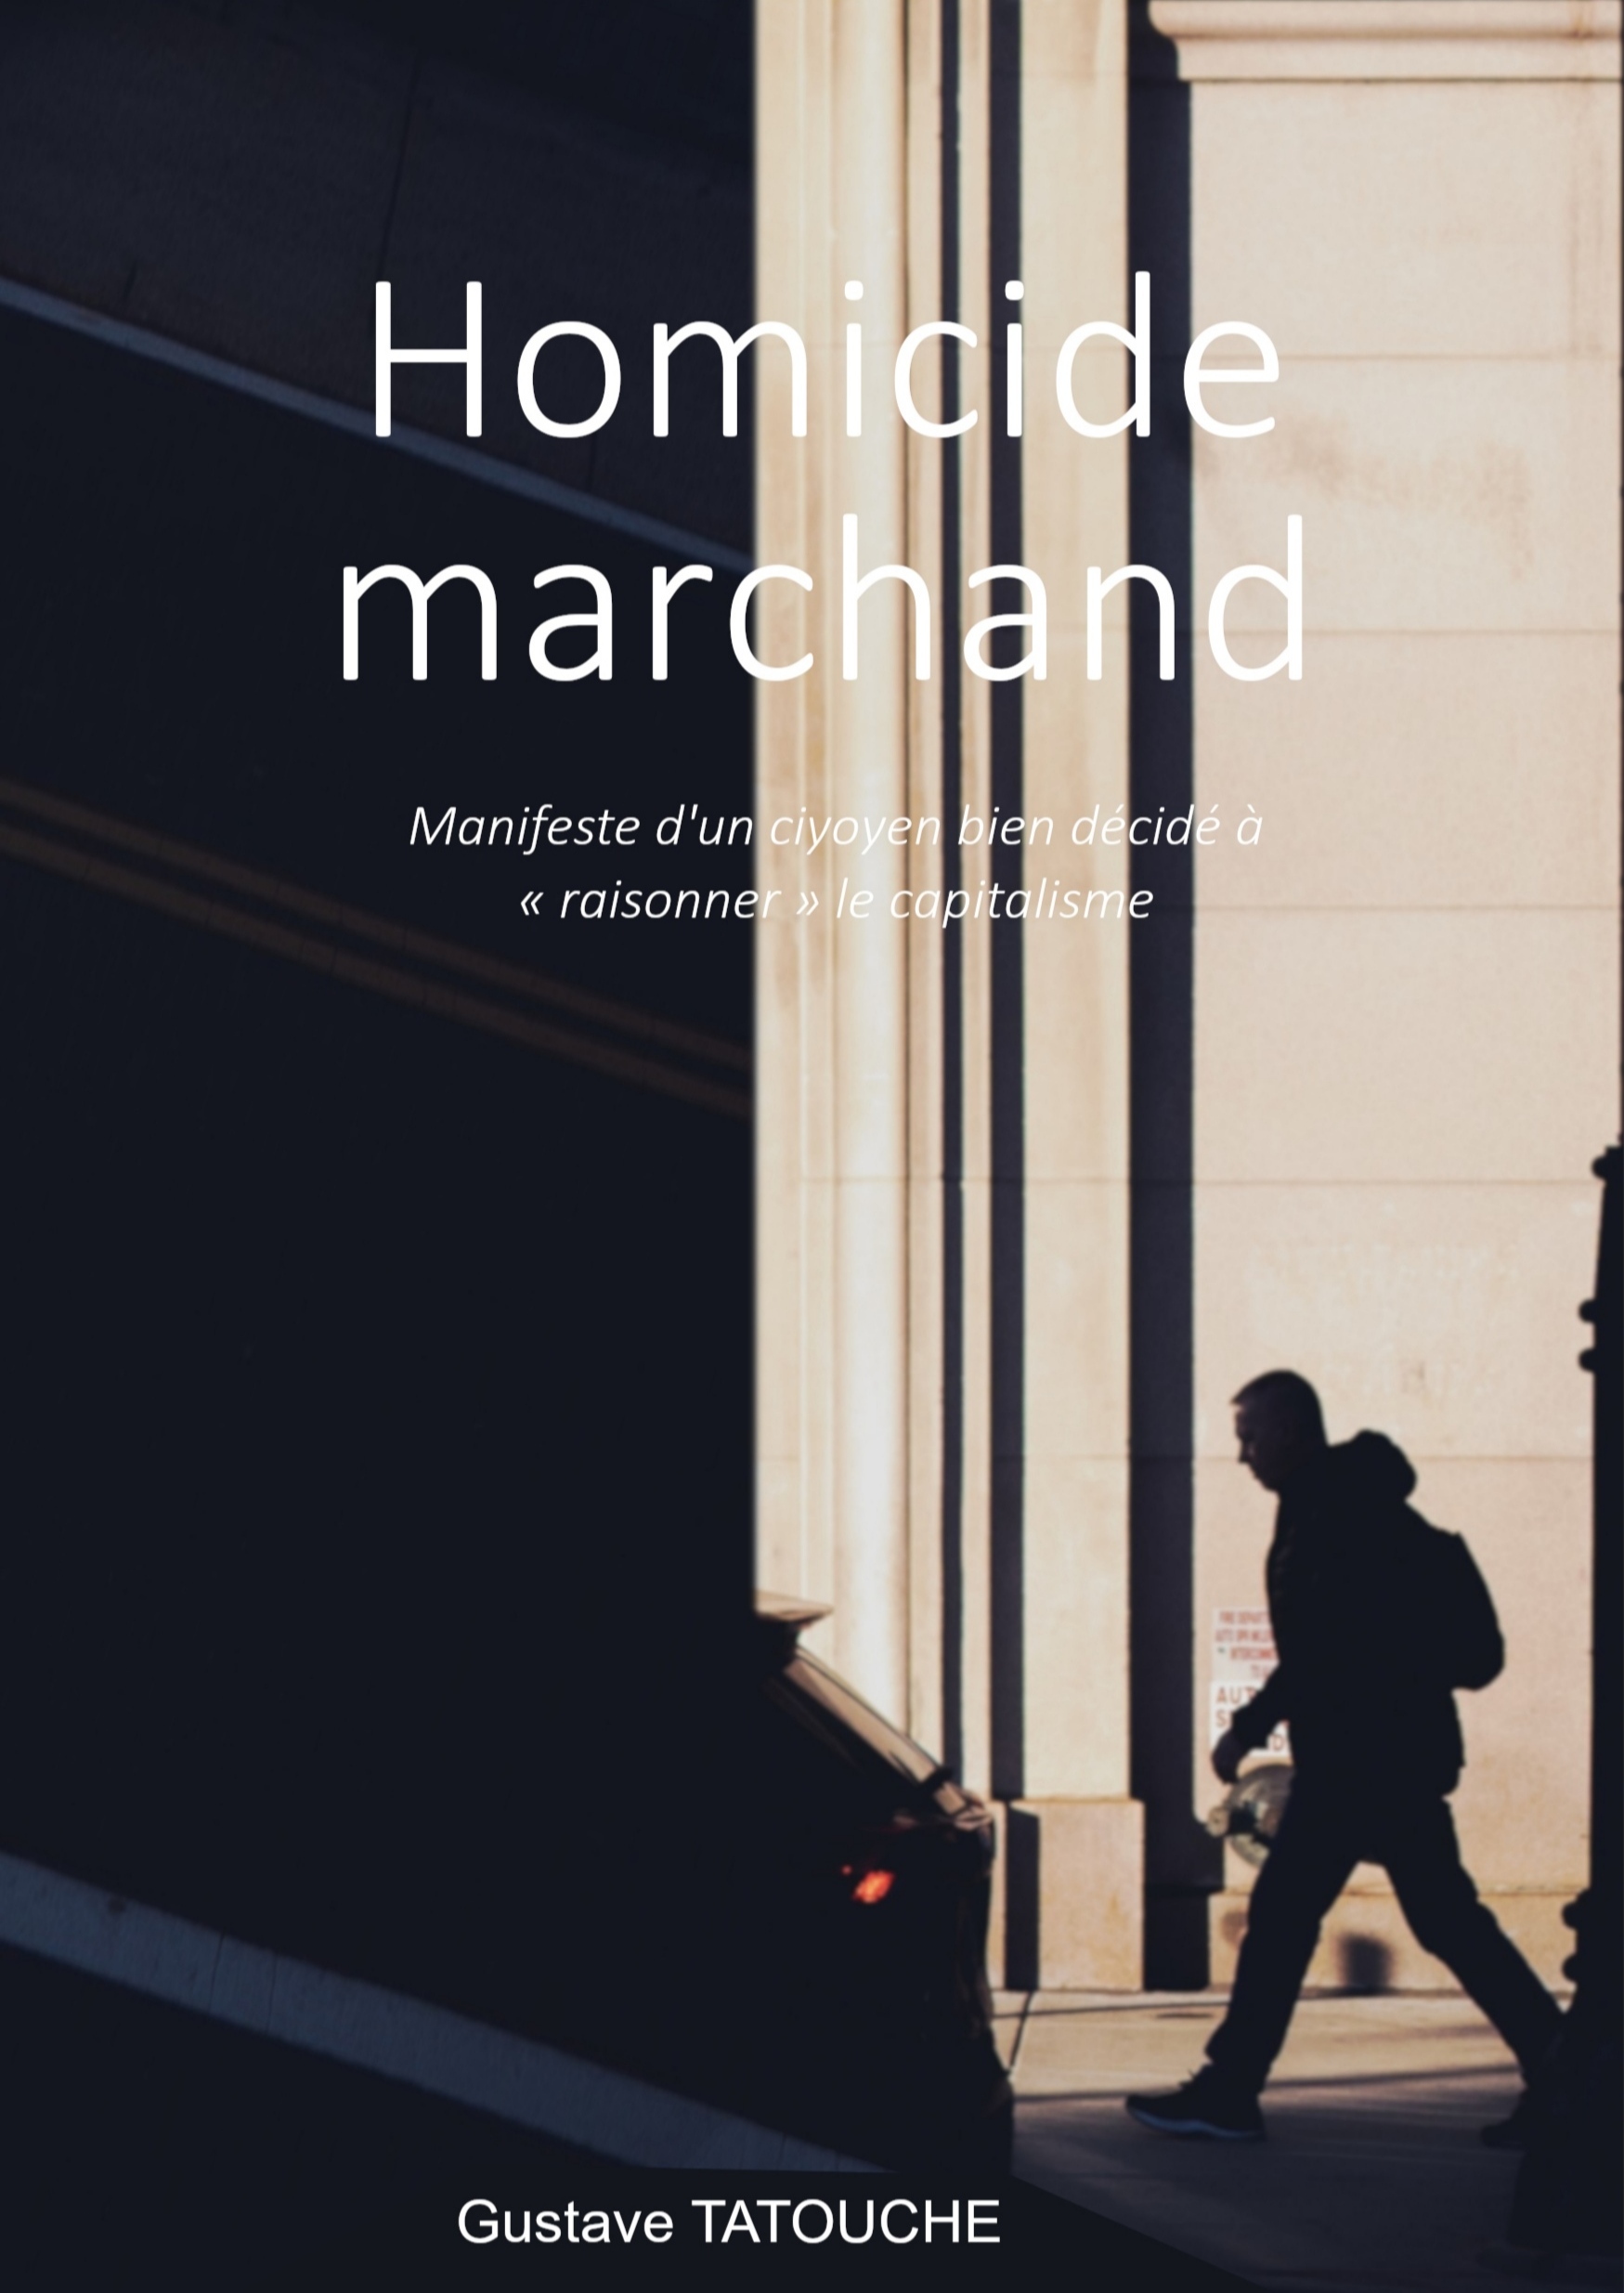 “Homicide Marchand” de Gustave Tatouche : le Manifeste d’un citoyen bien décidé à “raisonner” le capitalisme